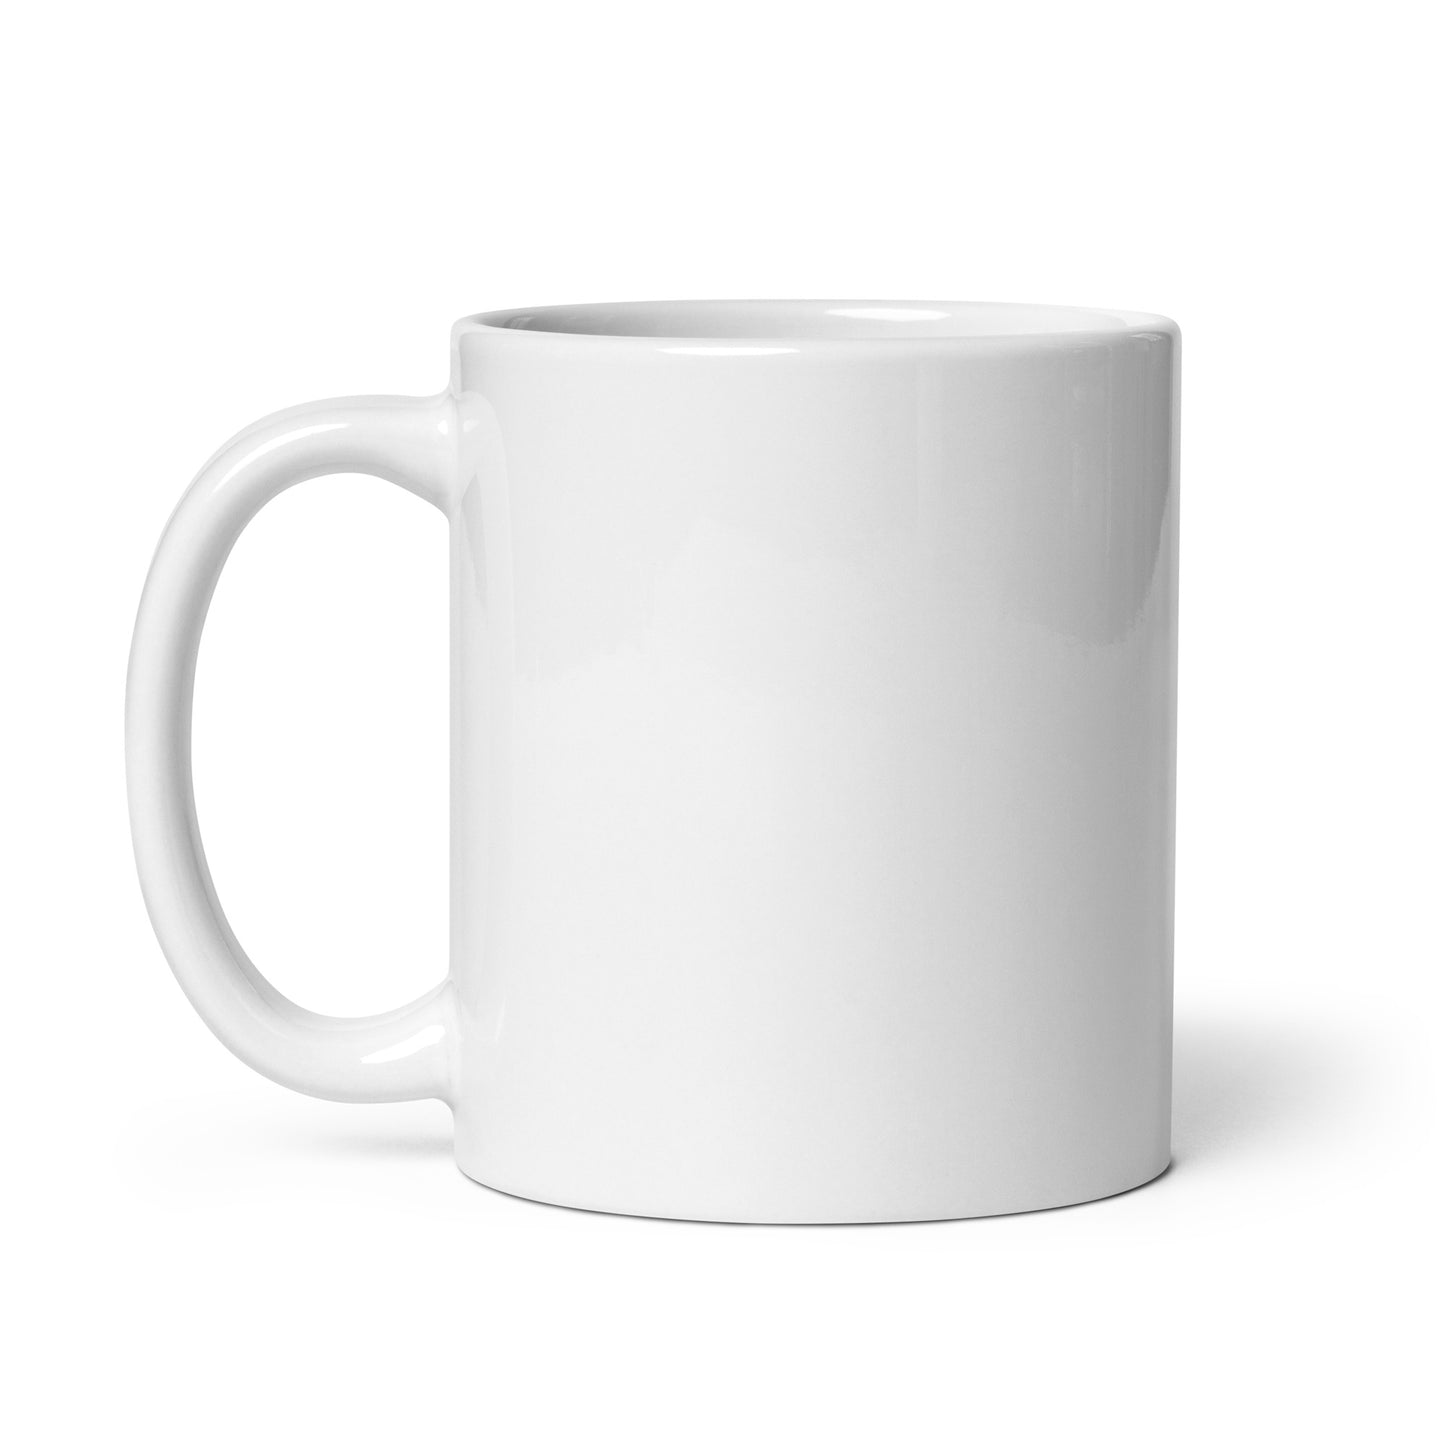 The Good Morning Companion Mug